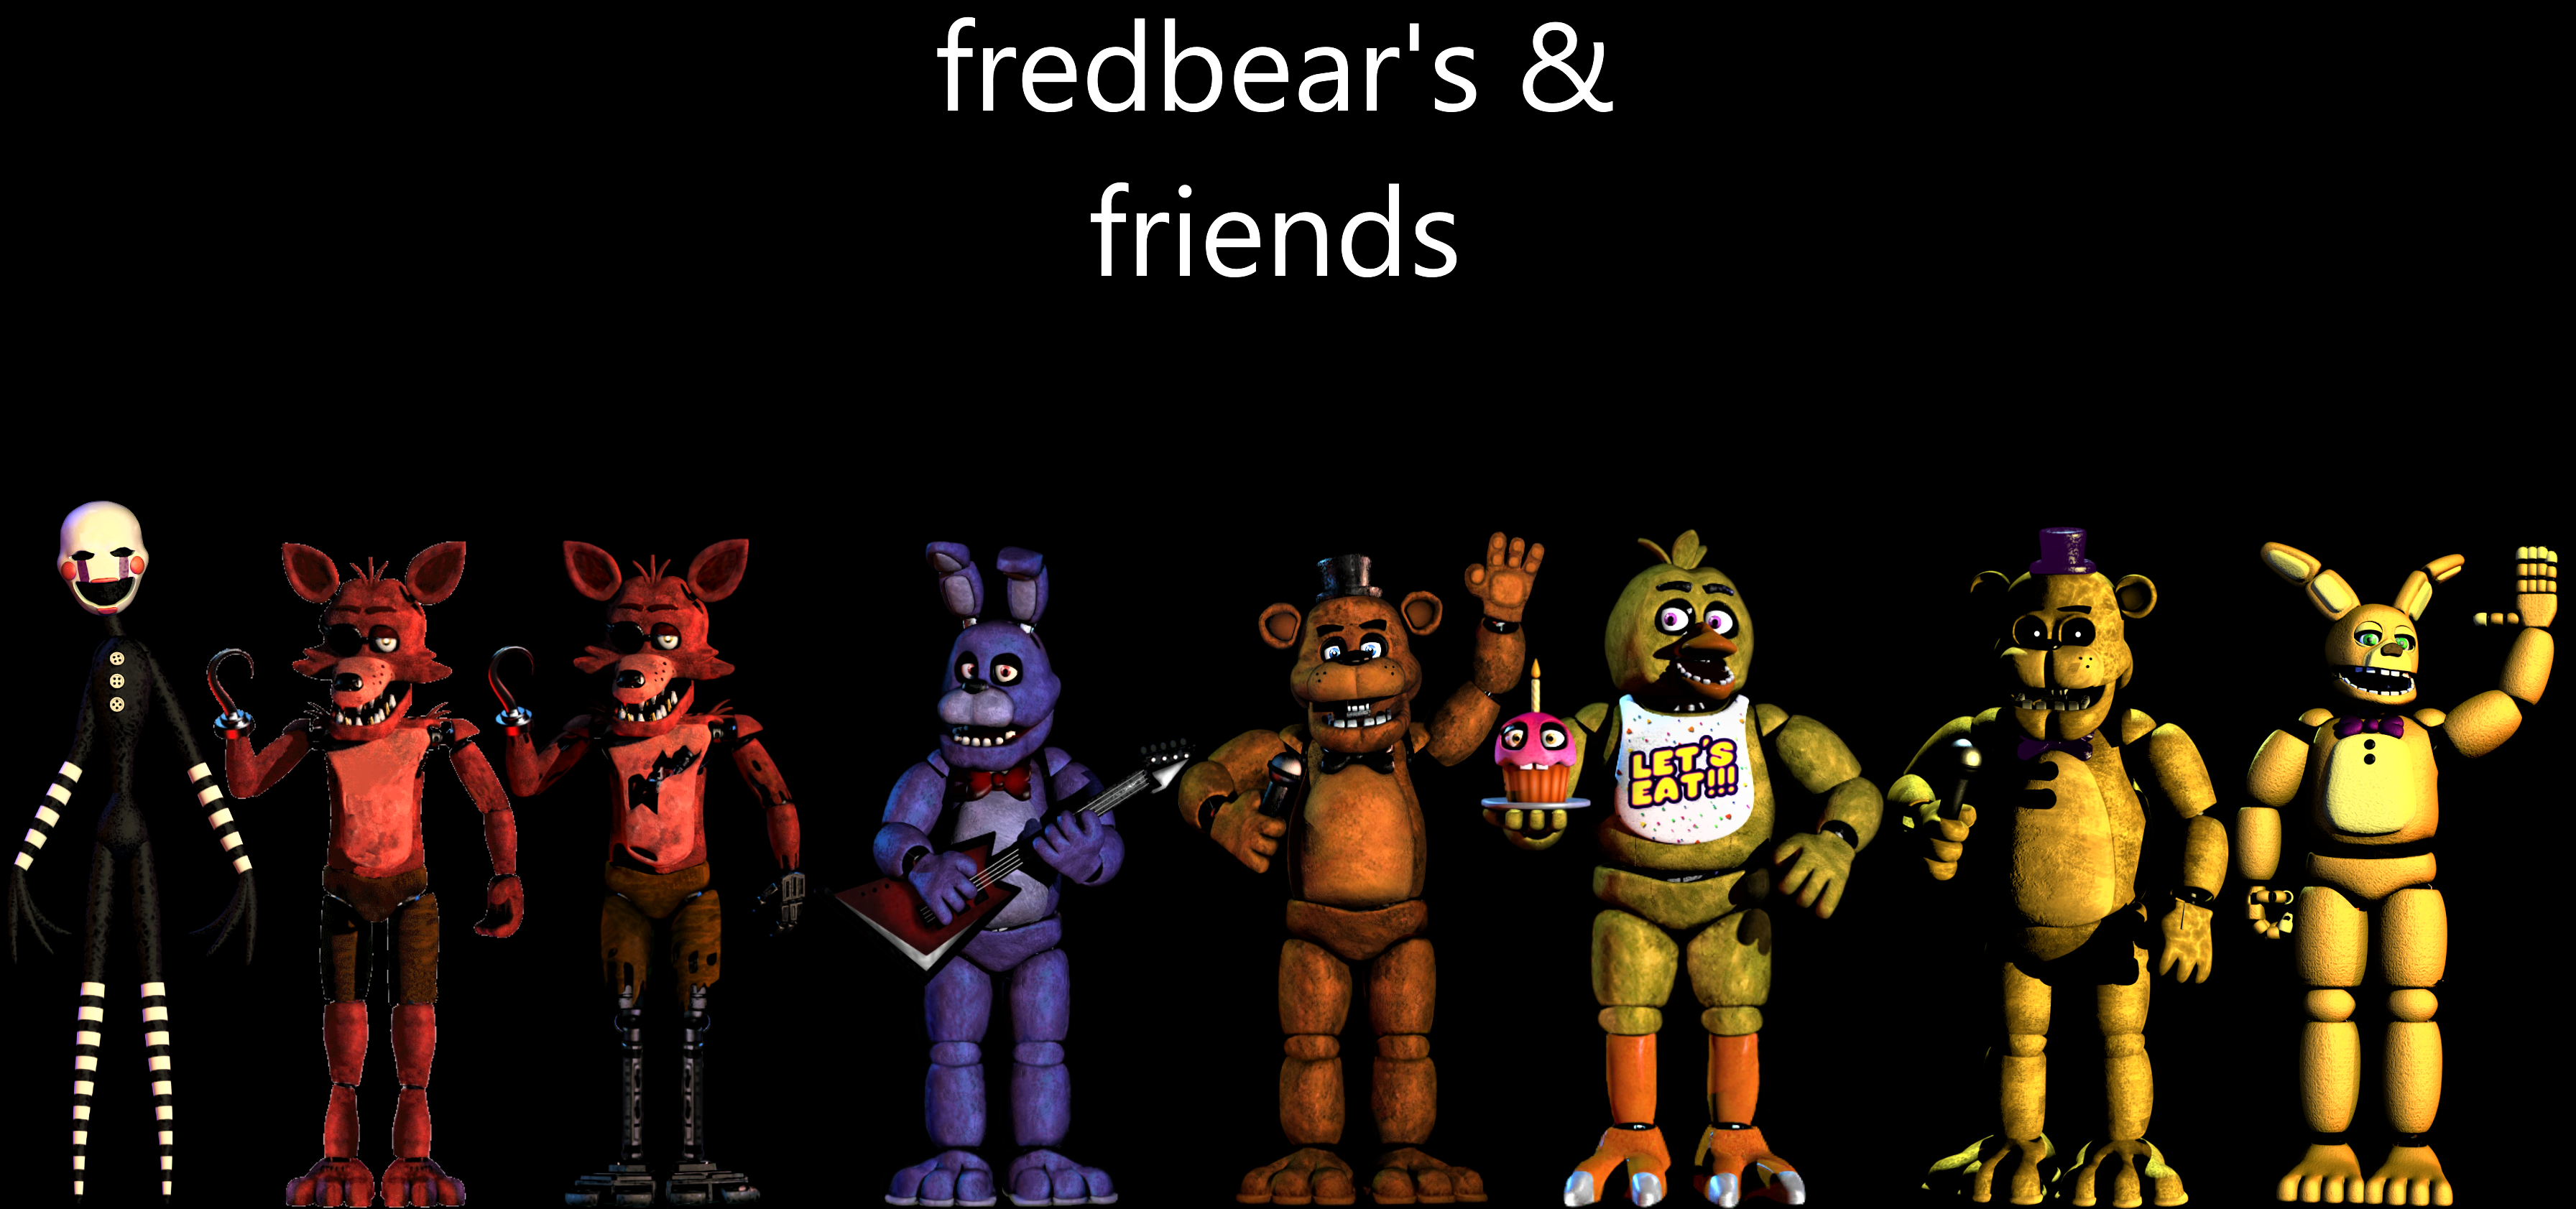 FNAF Fredbear's and Friends by mauricio2006 on DeviantArt